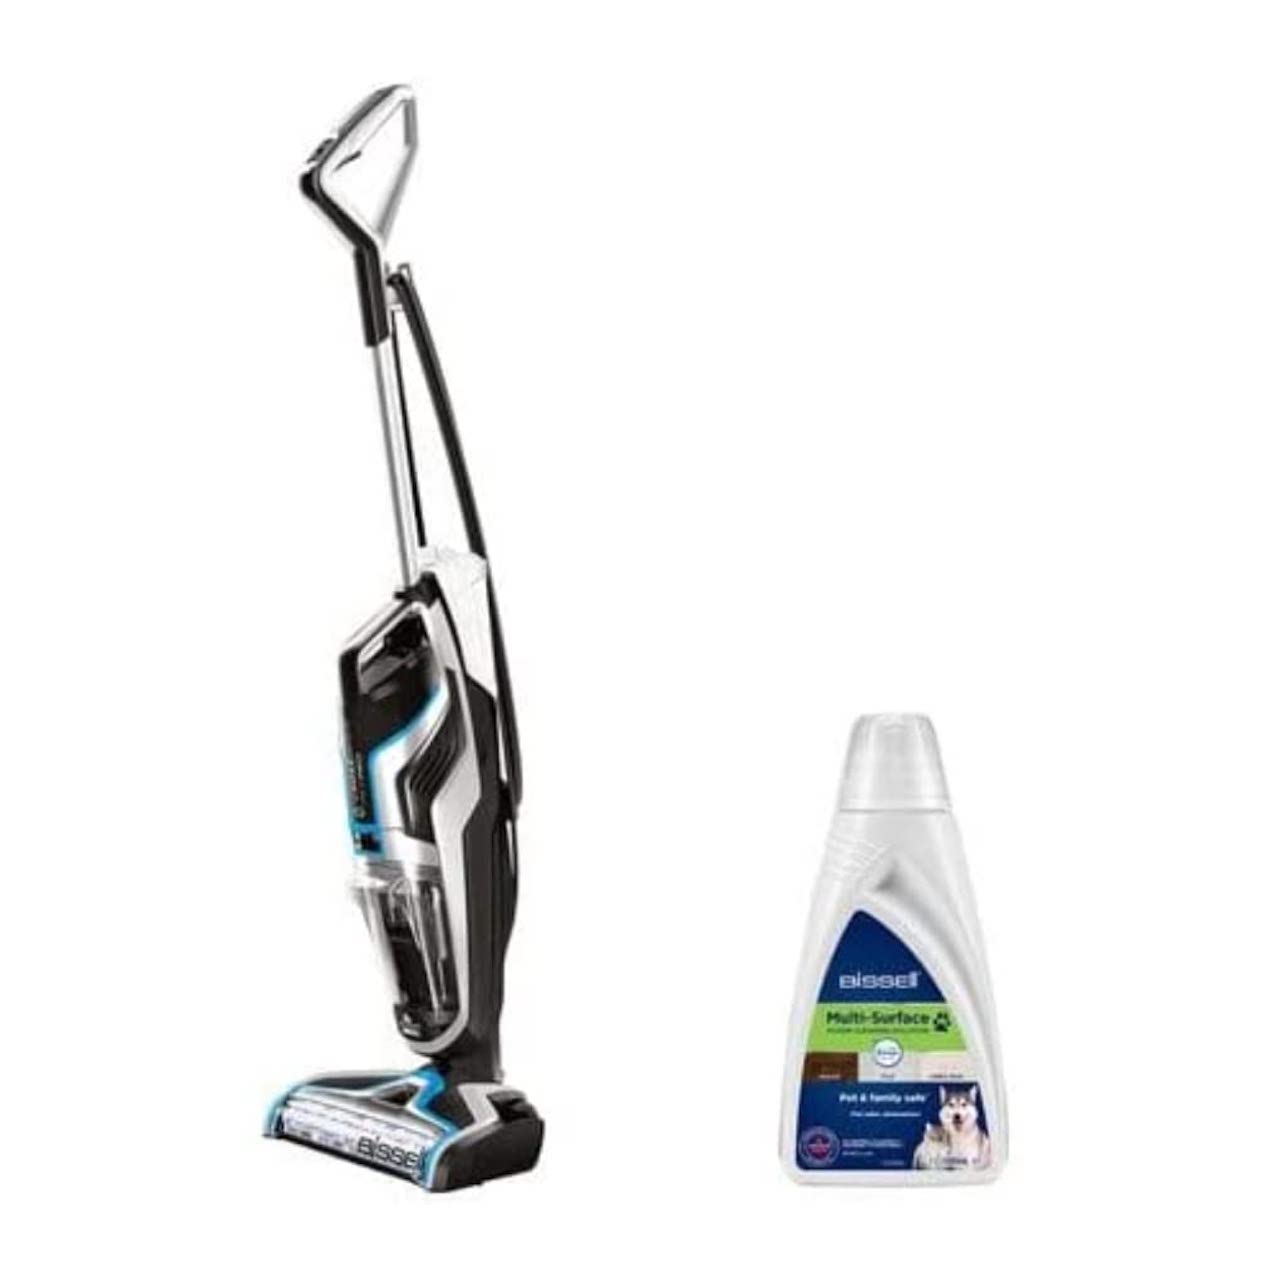 BISSEL Spot Clean Plus VS Kärcher SE 3-18 : Quel aspirateur lavant